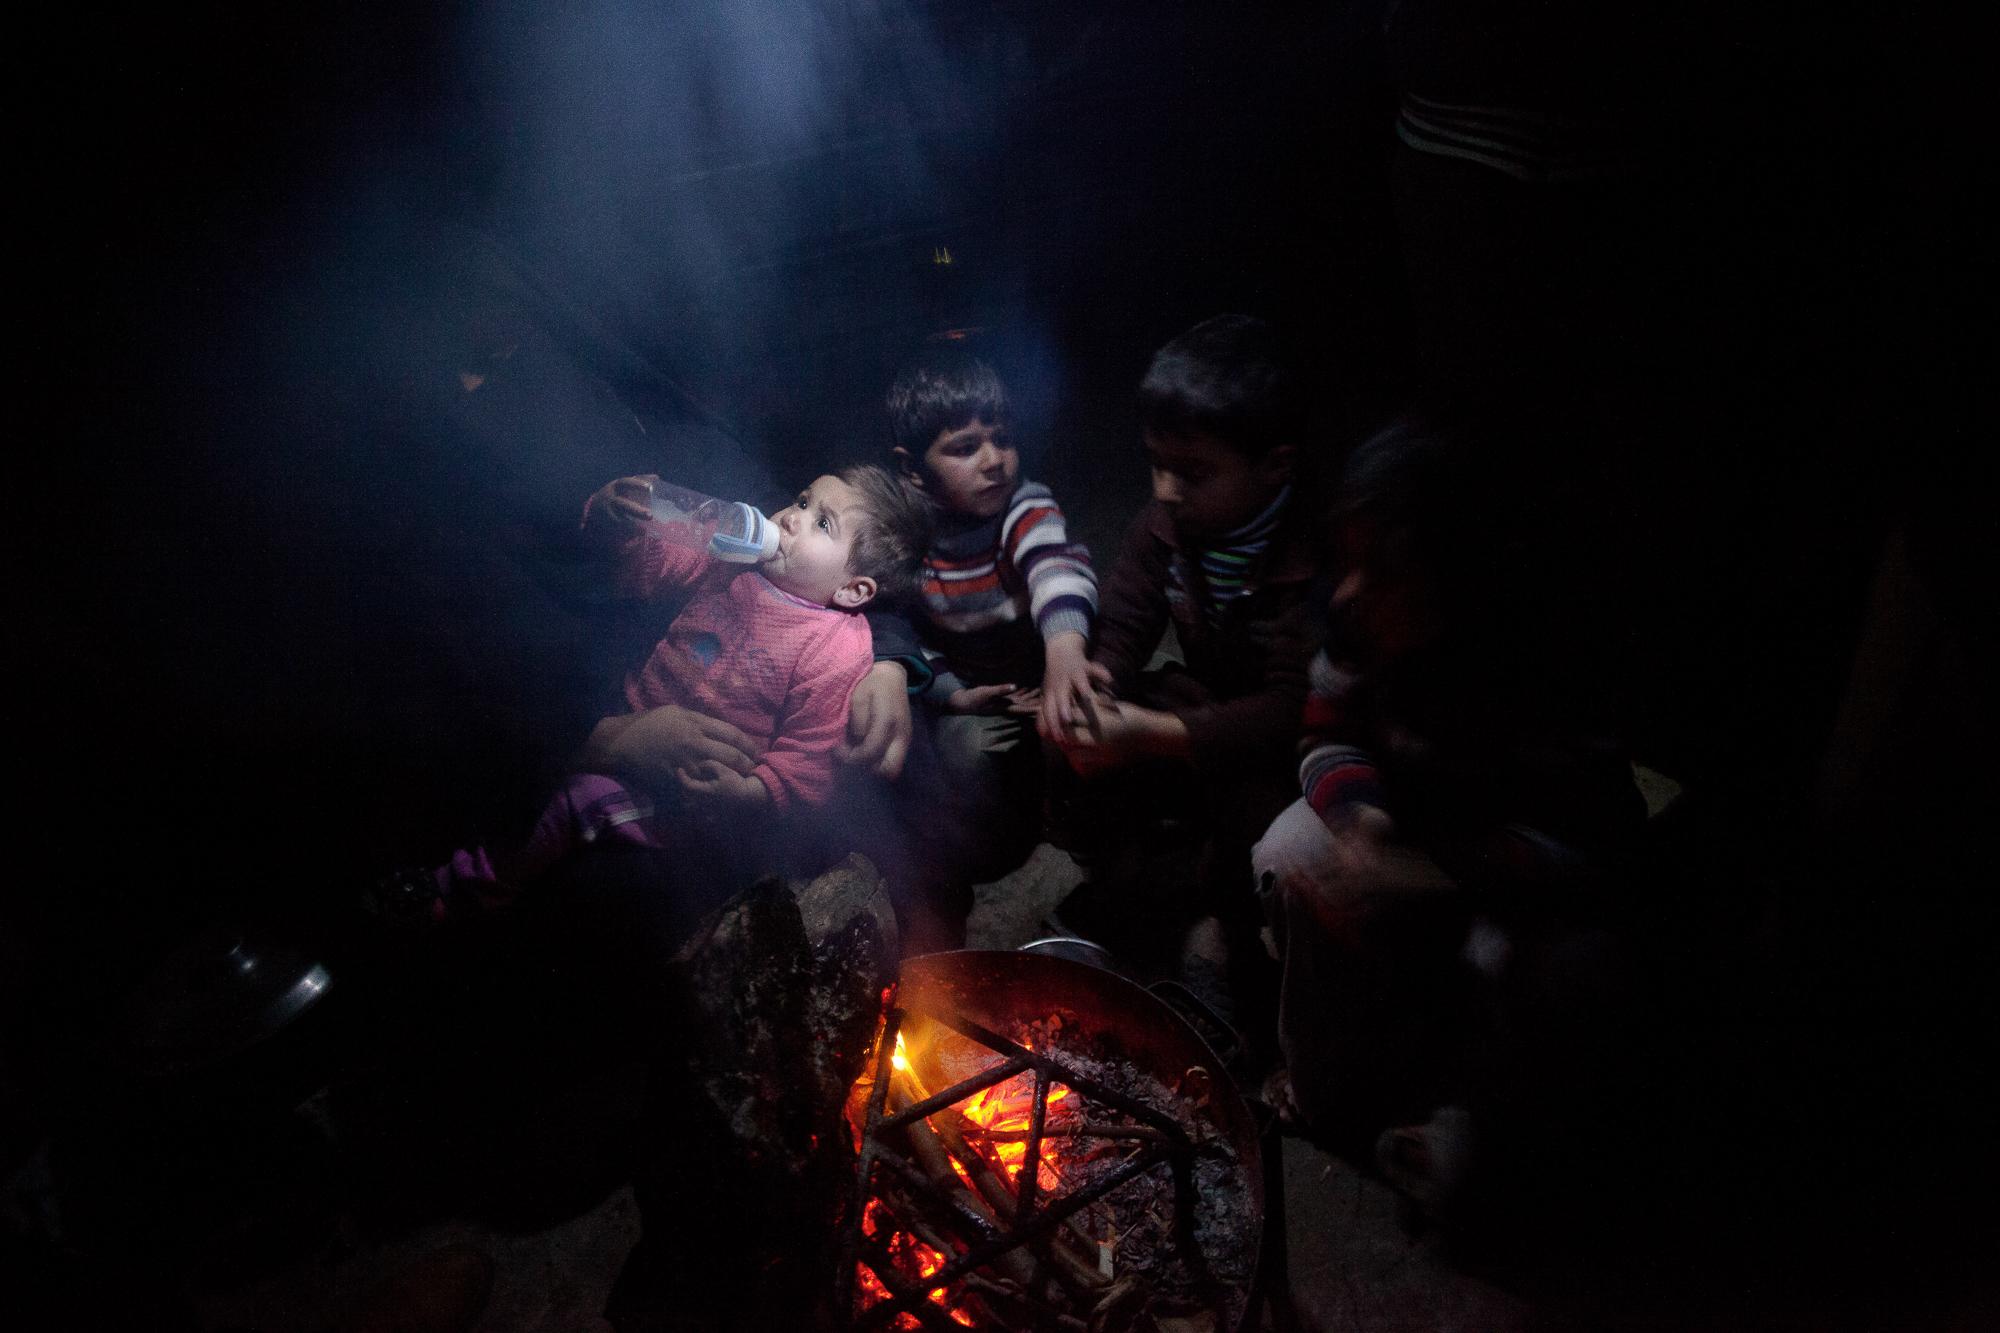 Life Under Siege - GAZA STRIP,Palestinian children gathering around fire...